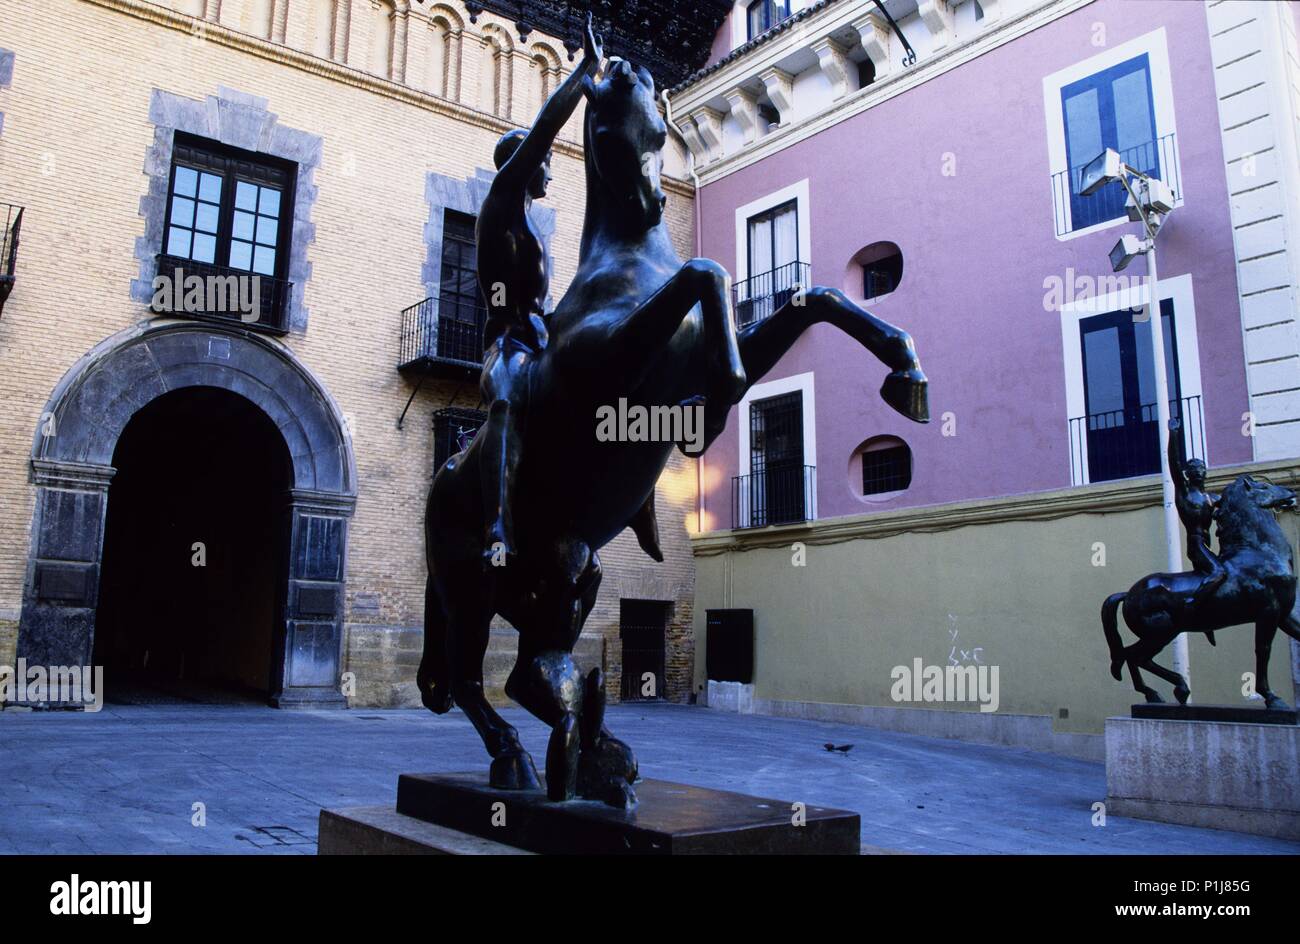 Zaragoza capital; museo y esculturas del artista Pablo Cargallo. Stock Photo